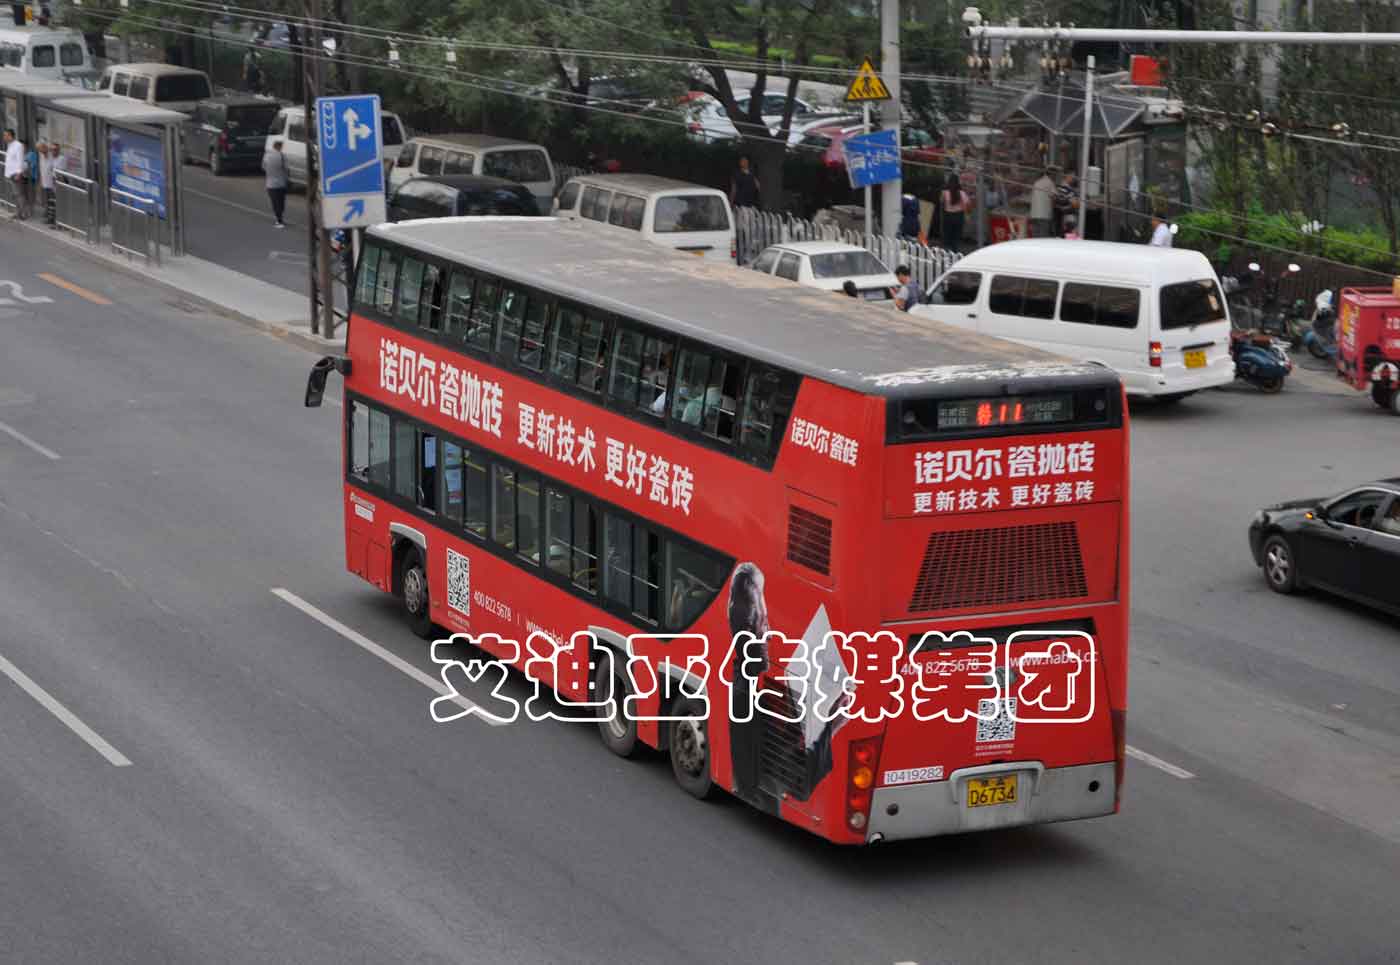 公交车广告案例图片-bifa必发